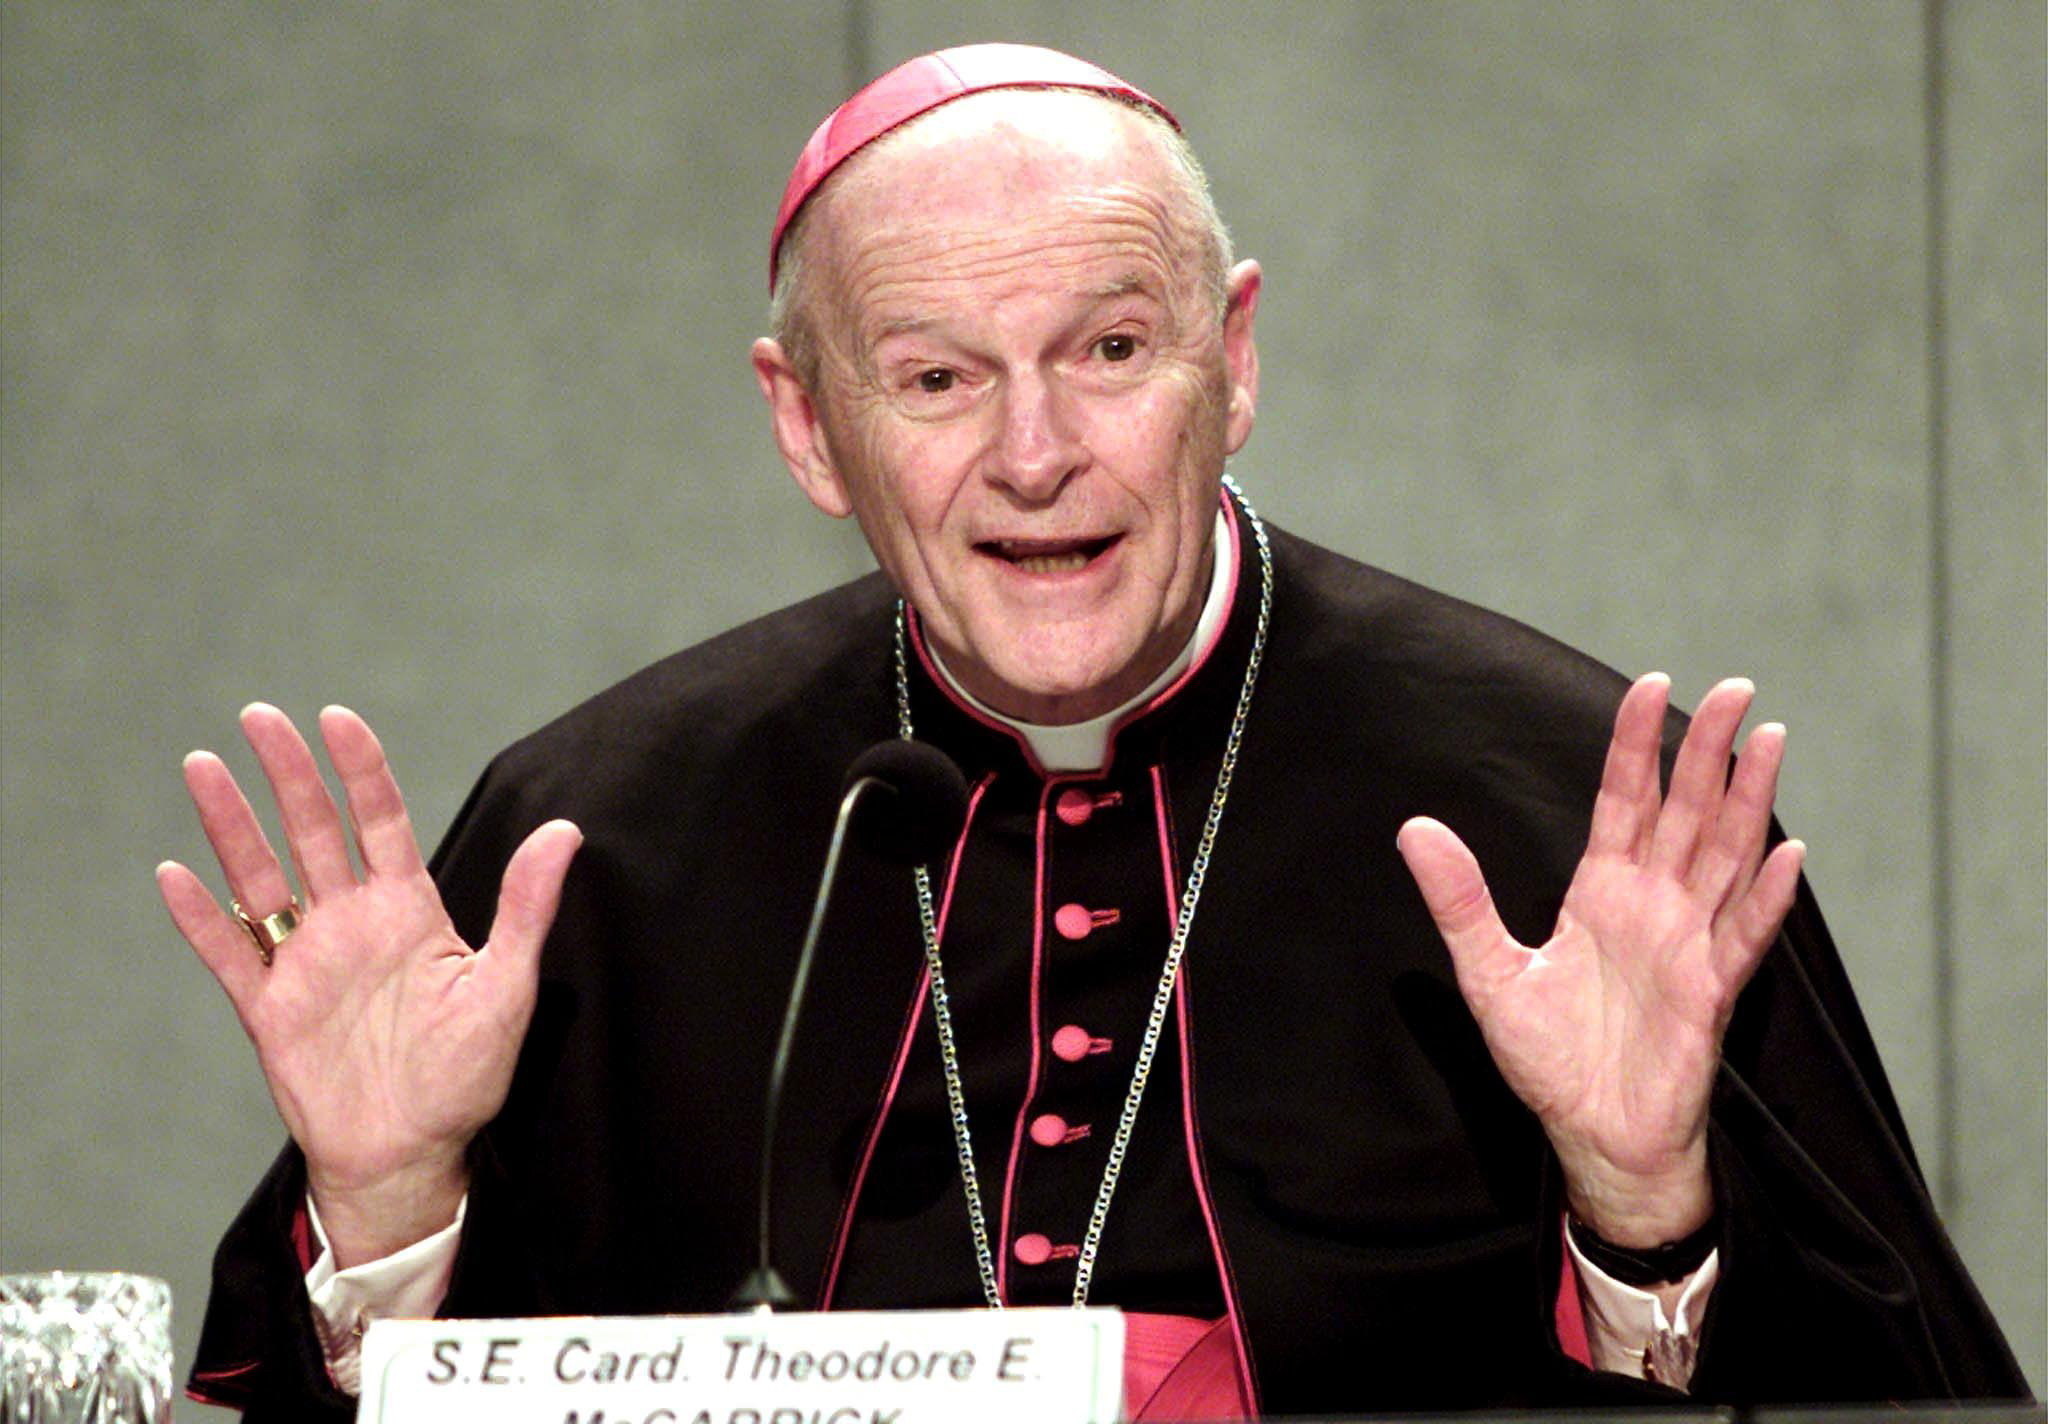 Vaticano expulsa del sacerdocio al excardenal McCarrick por abusos